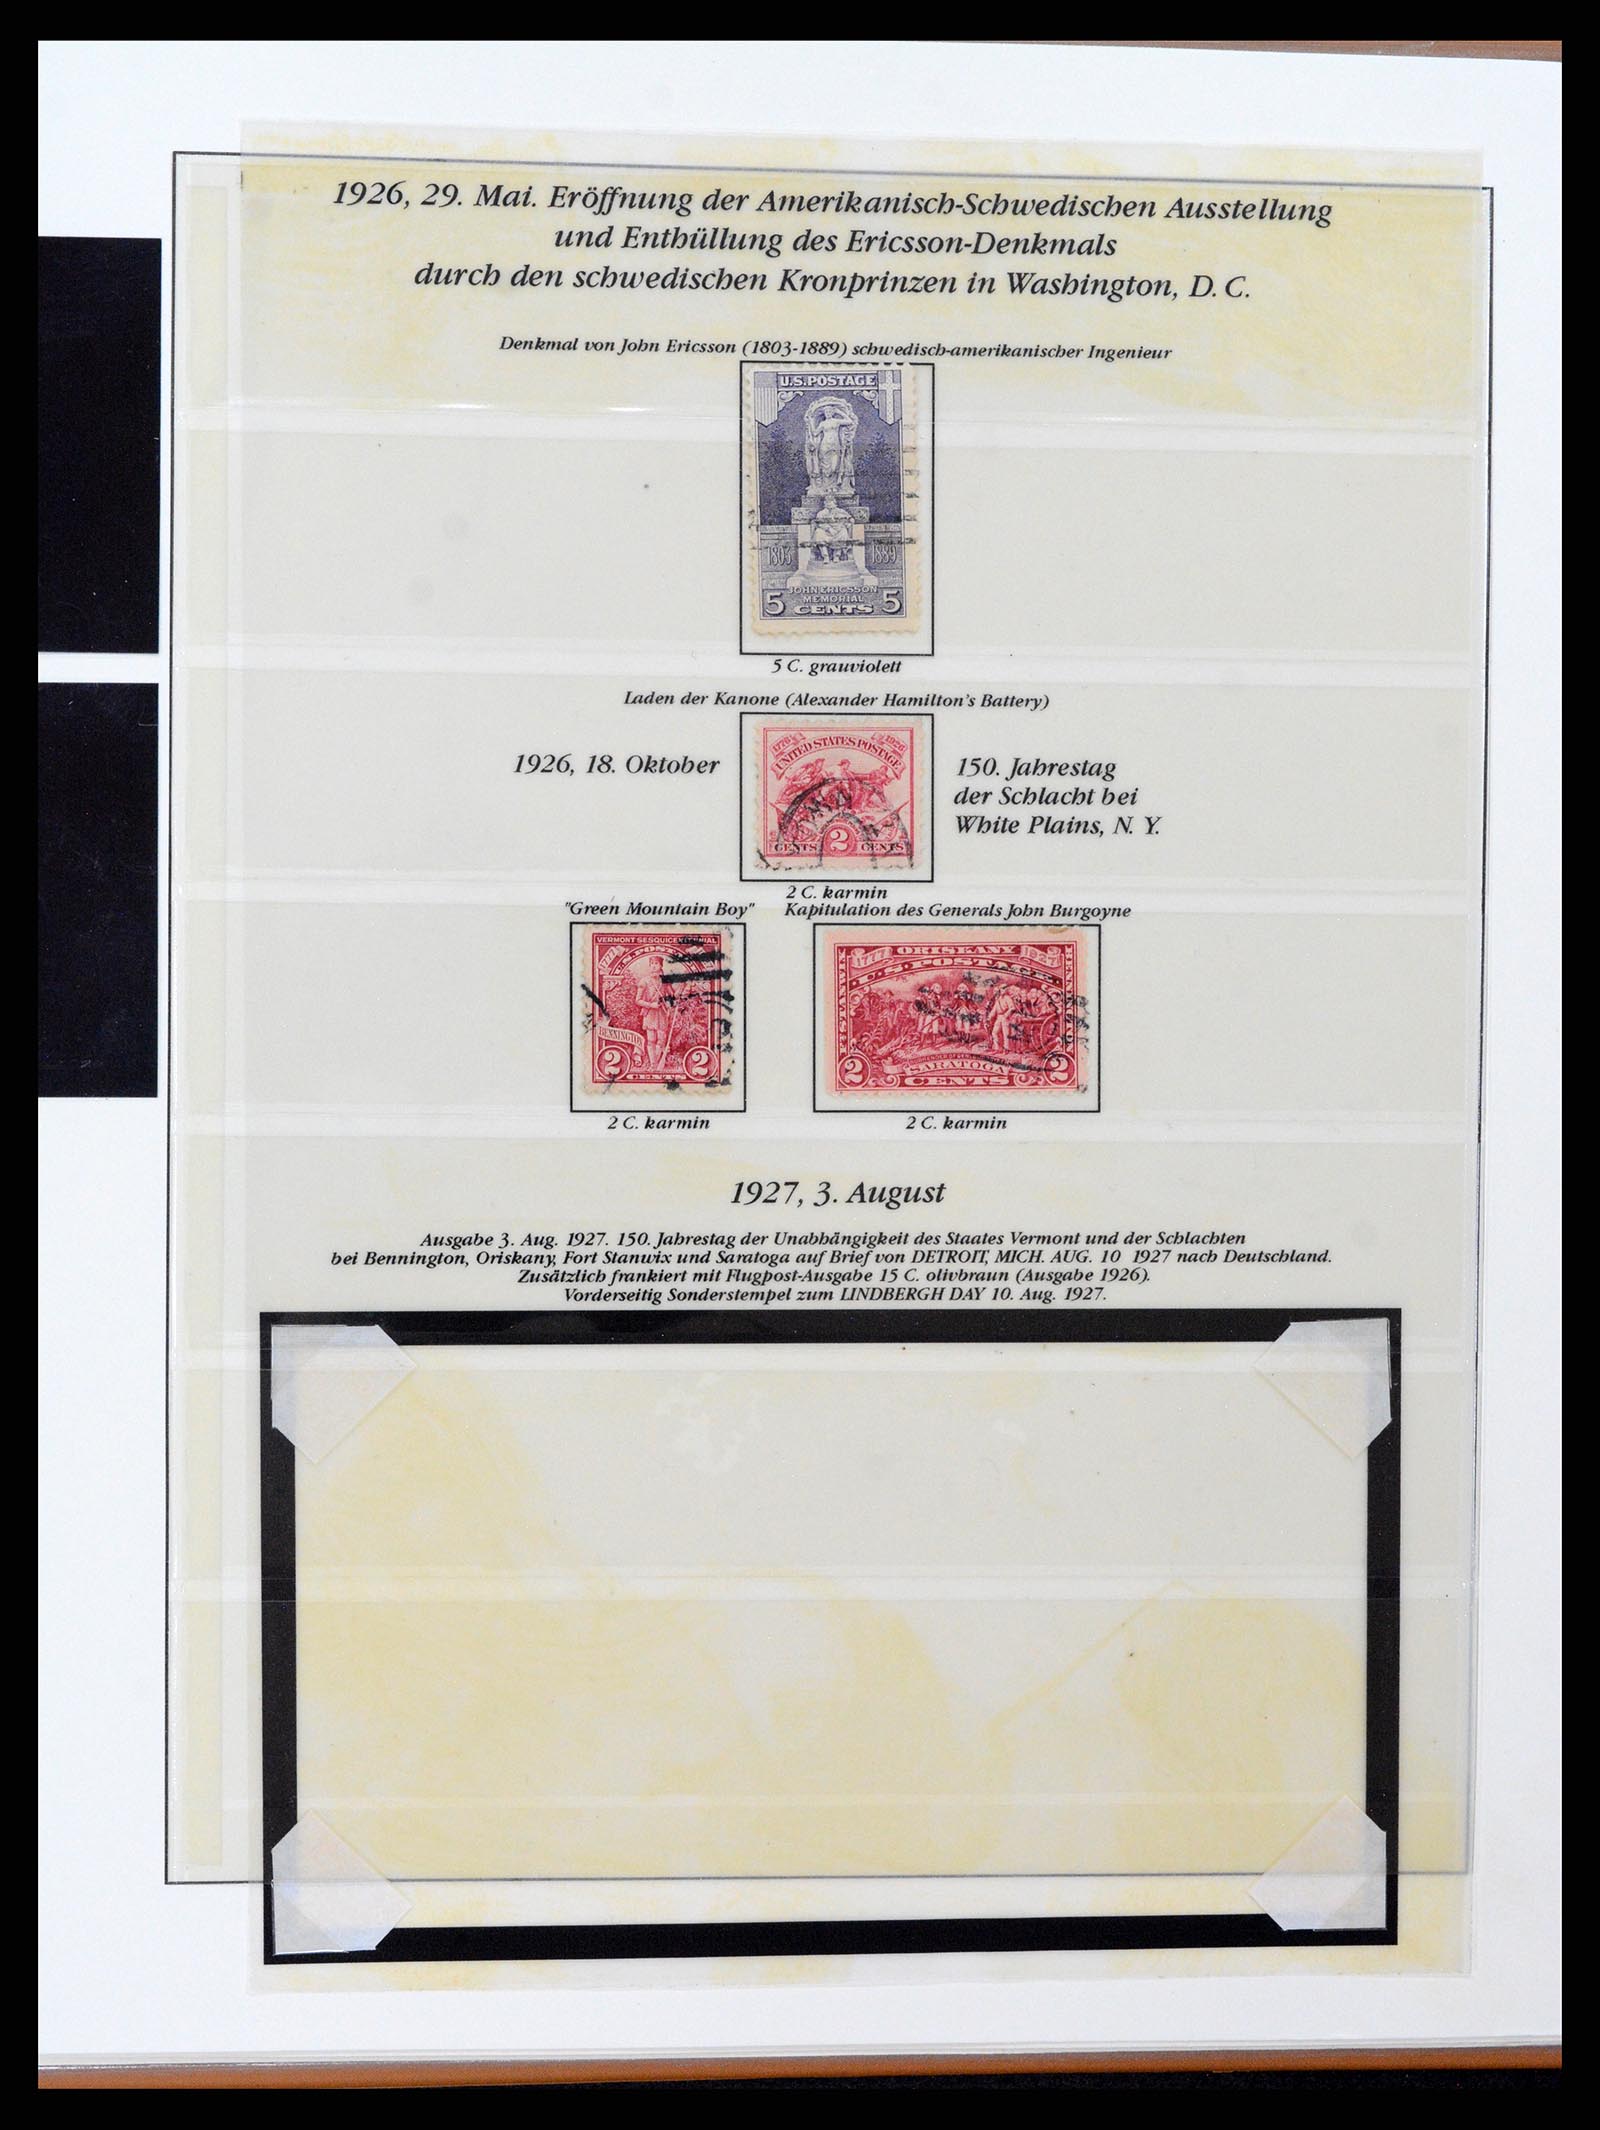 37653 072 - Stamp collection 37653 USA 1870-1954.